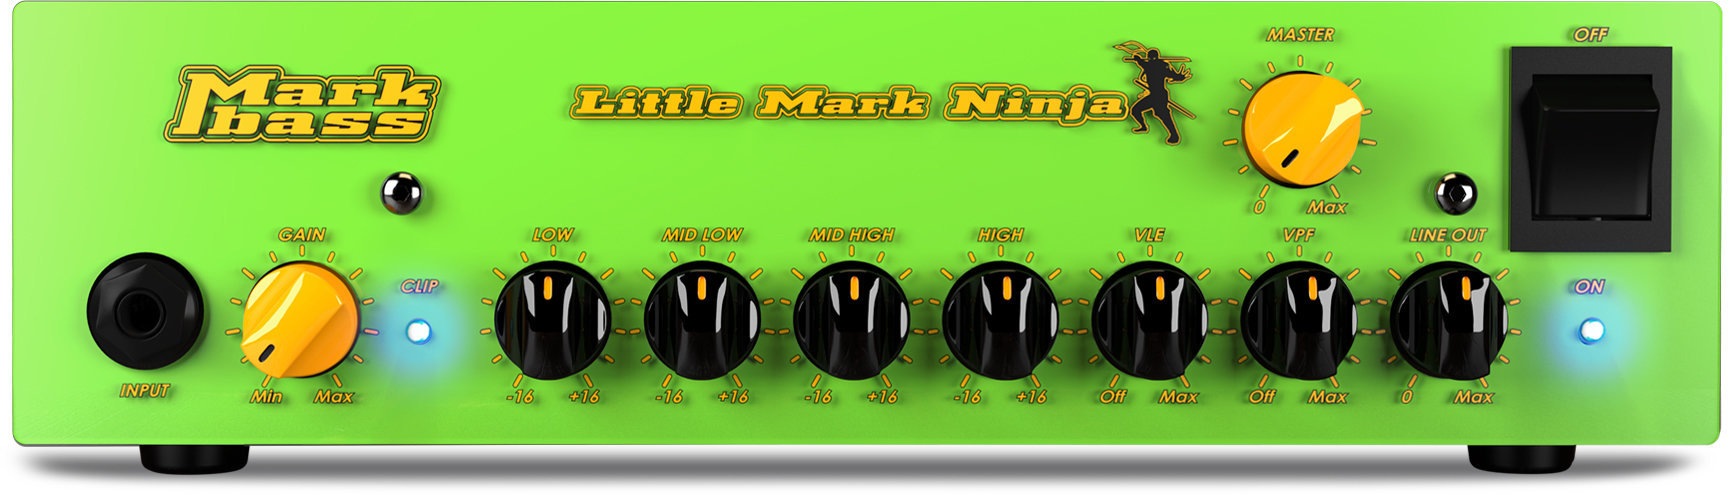 Transistor Bassverstärker Markbass Little Mark Ninja